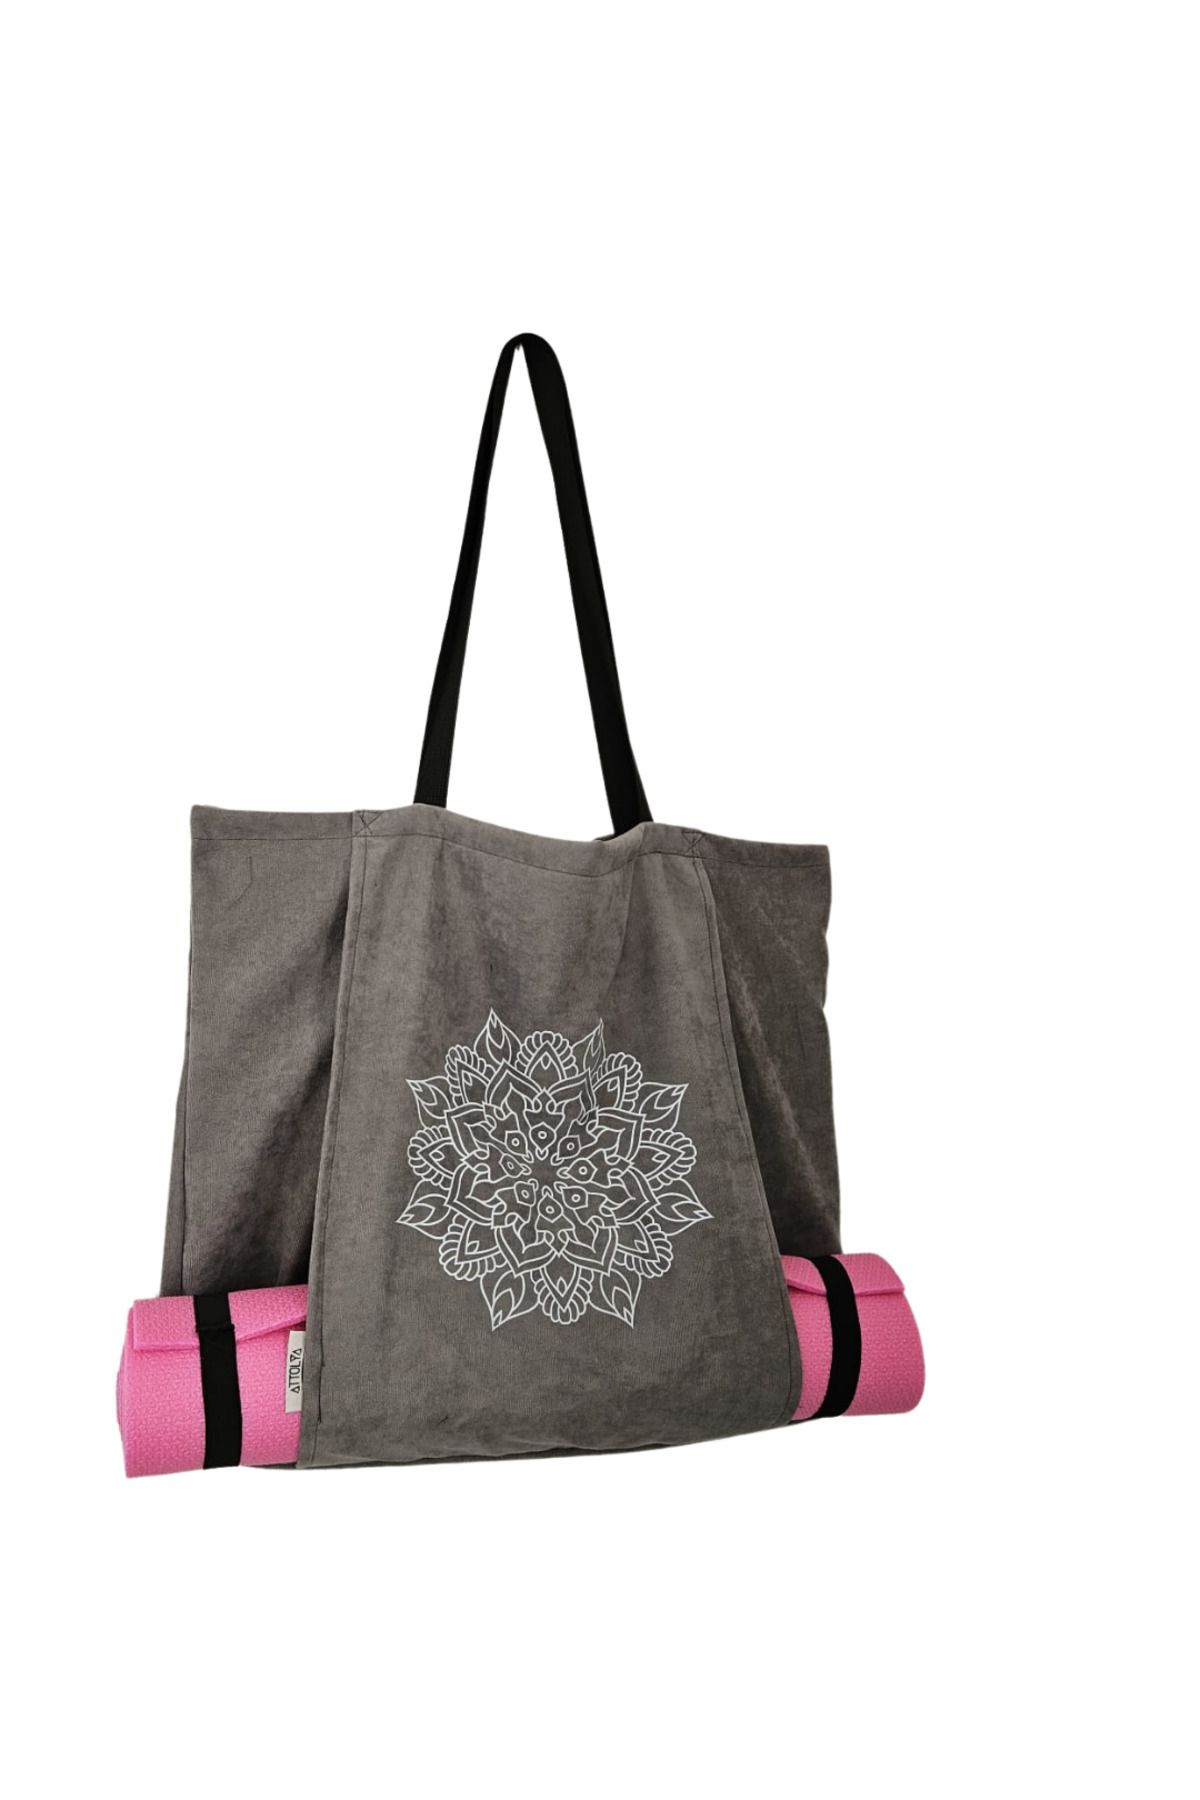 Attolya Mat çantası- Yoga çanta- mat taşıma yoga malzeme, pilates malzemesi